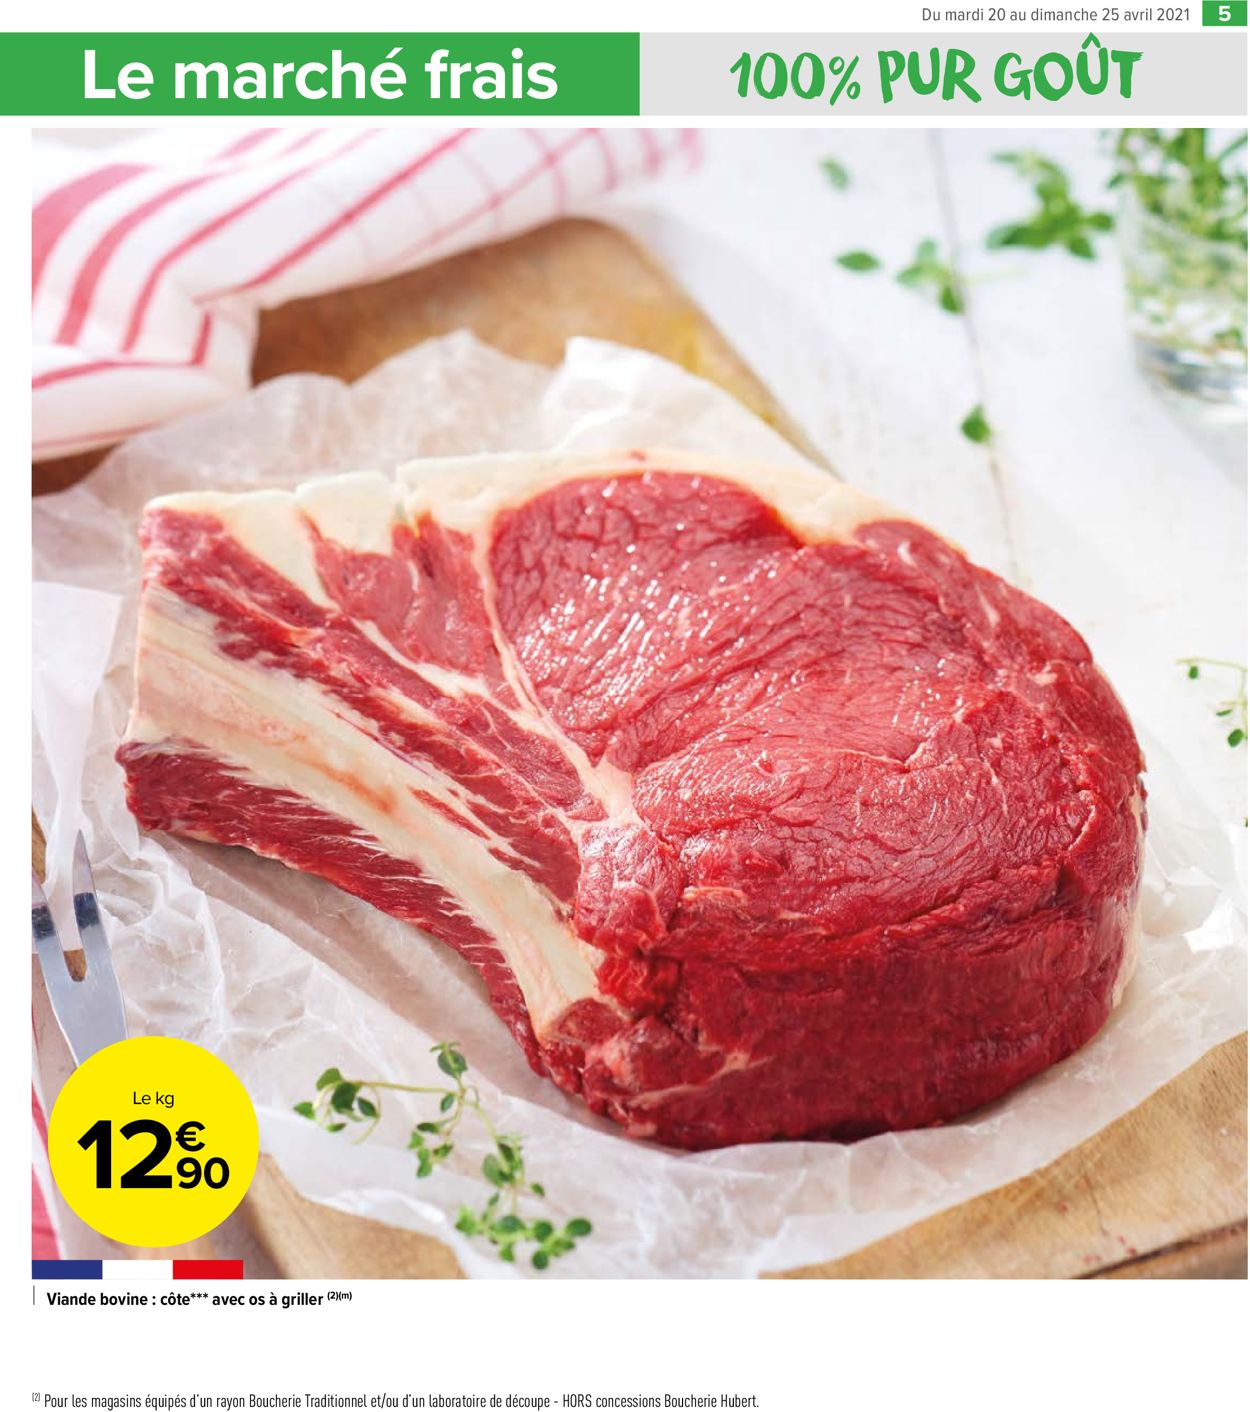 Carrefour Catalogue du 20.04.2021